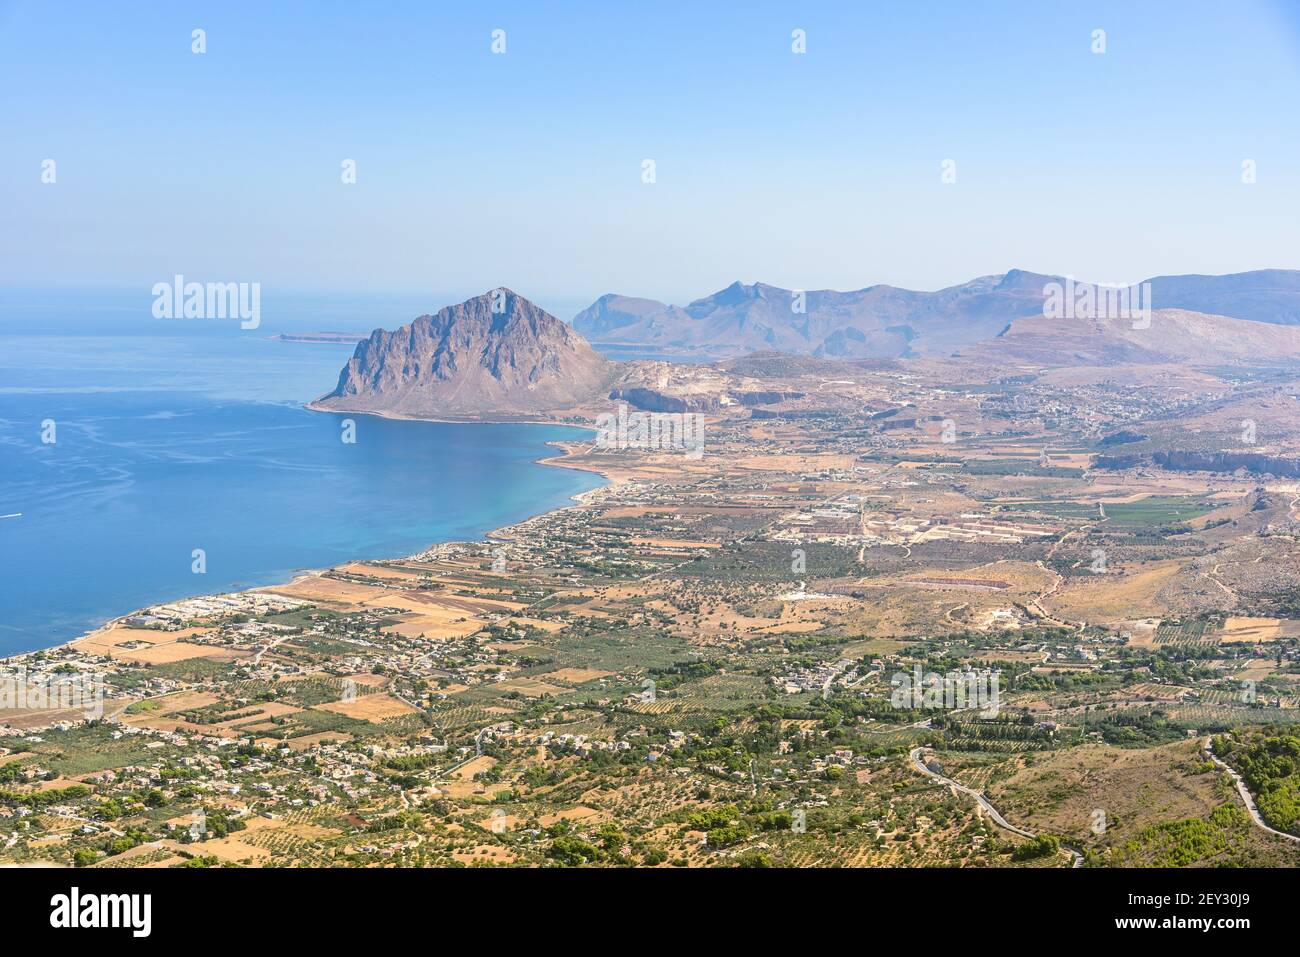 Paysage de la côte sicilienne avec la montagne de Cofano, Sicile occidentale, Italie Banque D'Images